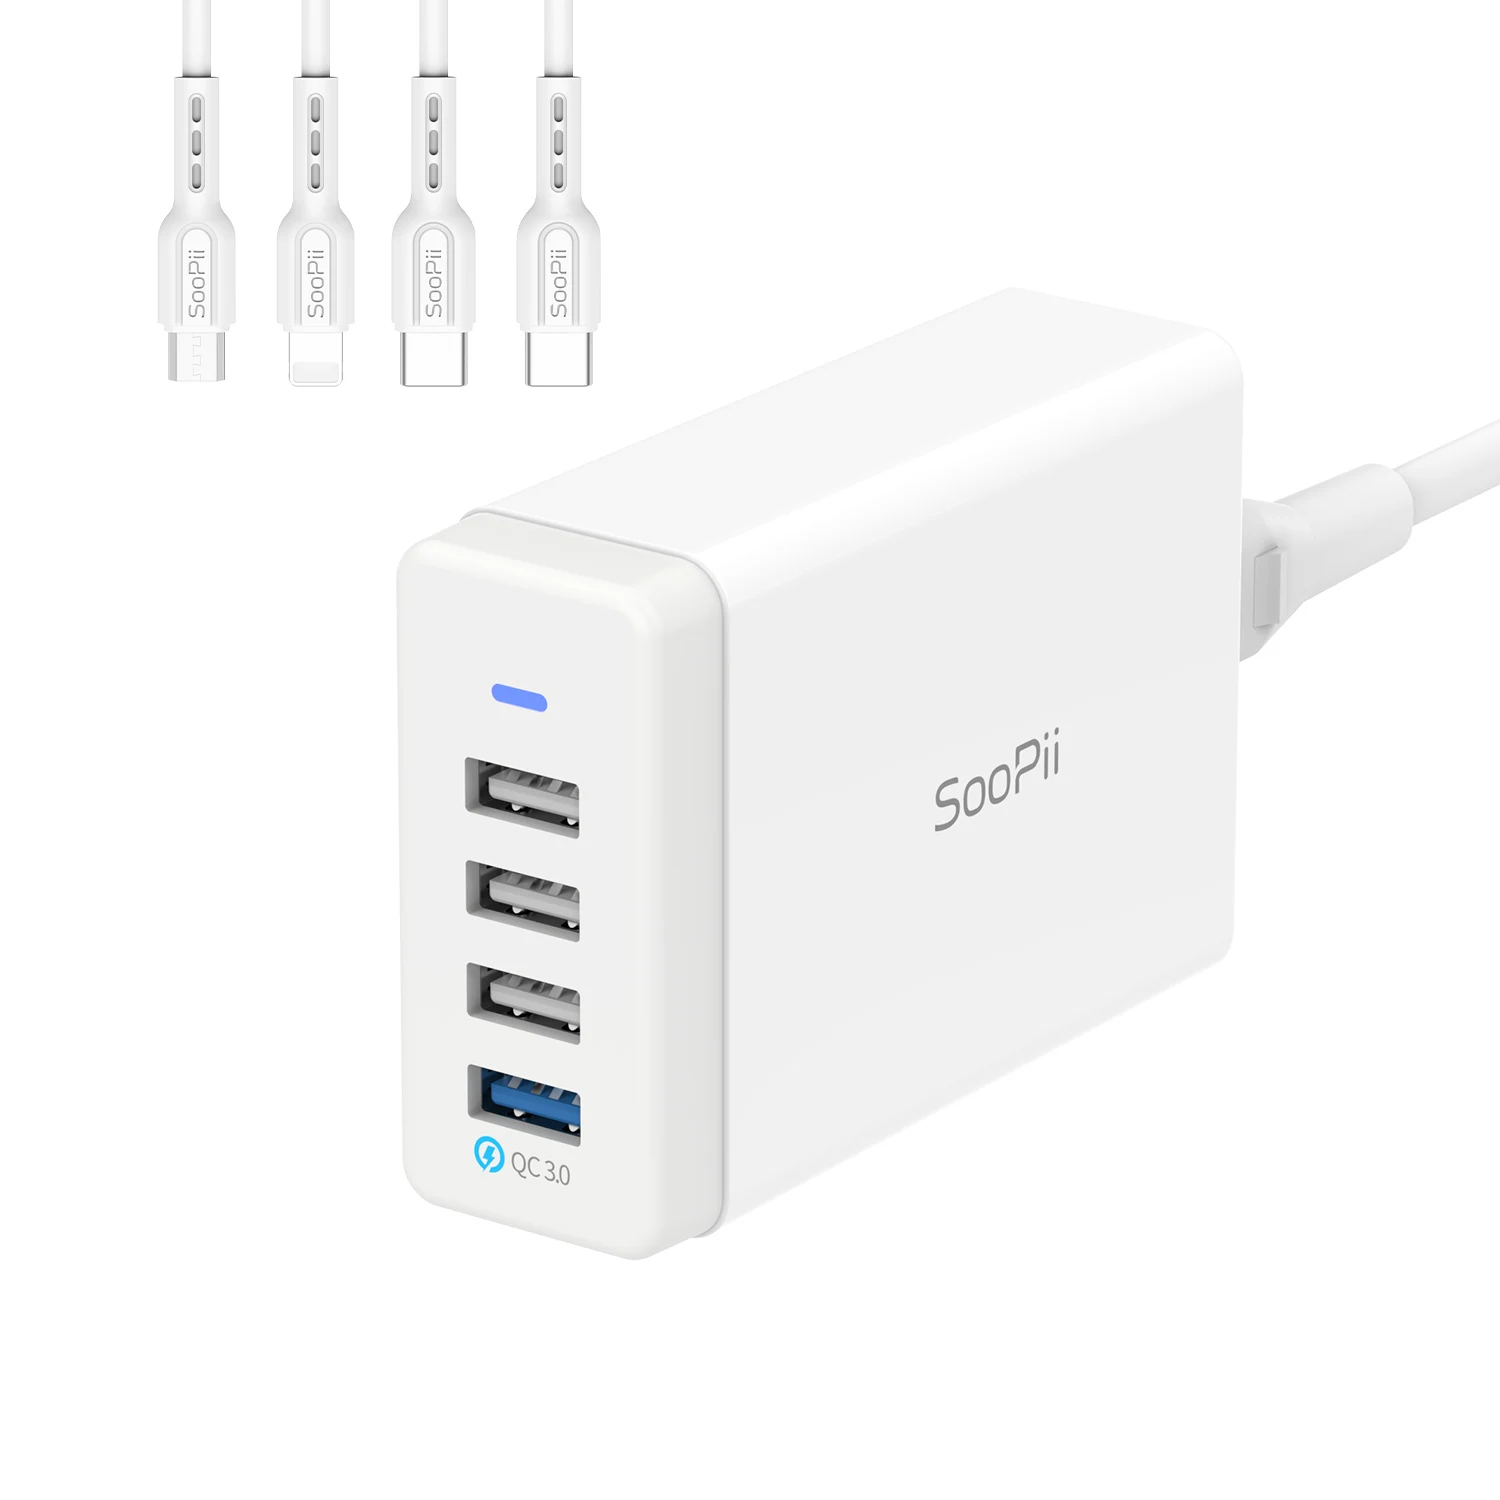 

SooPii Премиум QC 3,0 40W 4-портовая USB зарядная станция для нескольких устройств с 4 смешанными кабелями для телефонов планшетов и многого другого